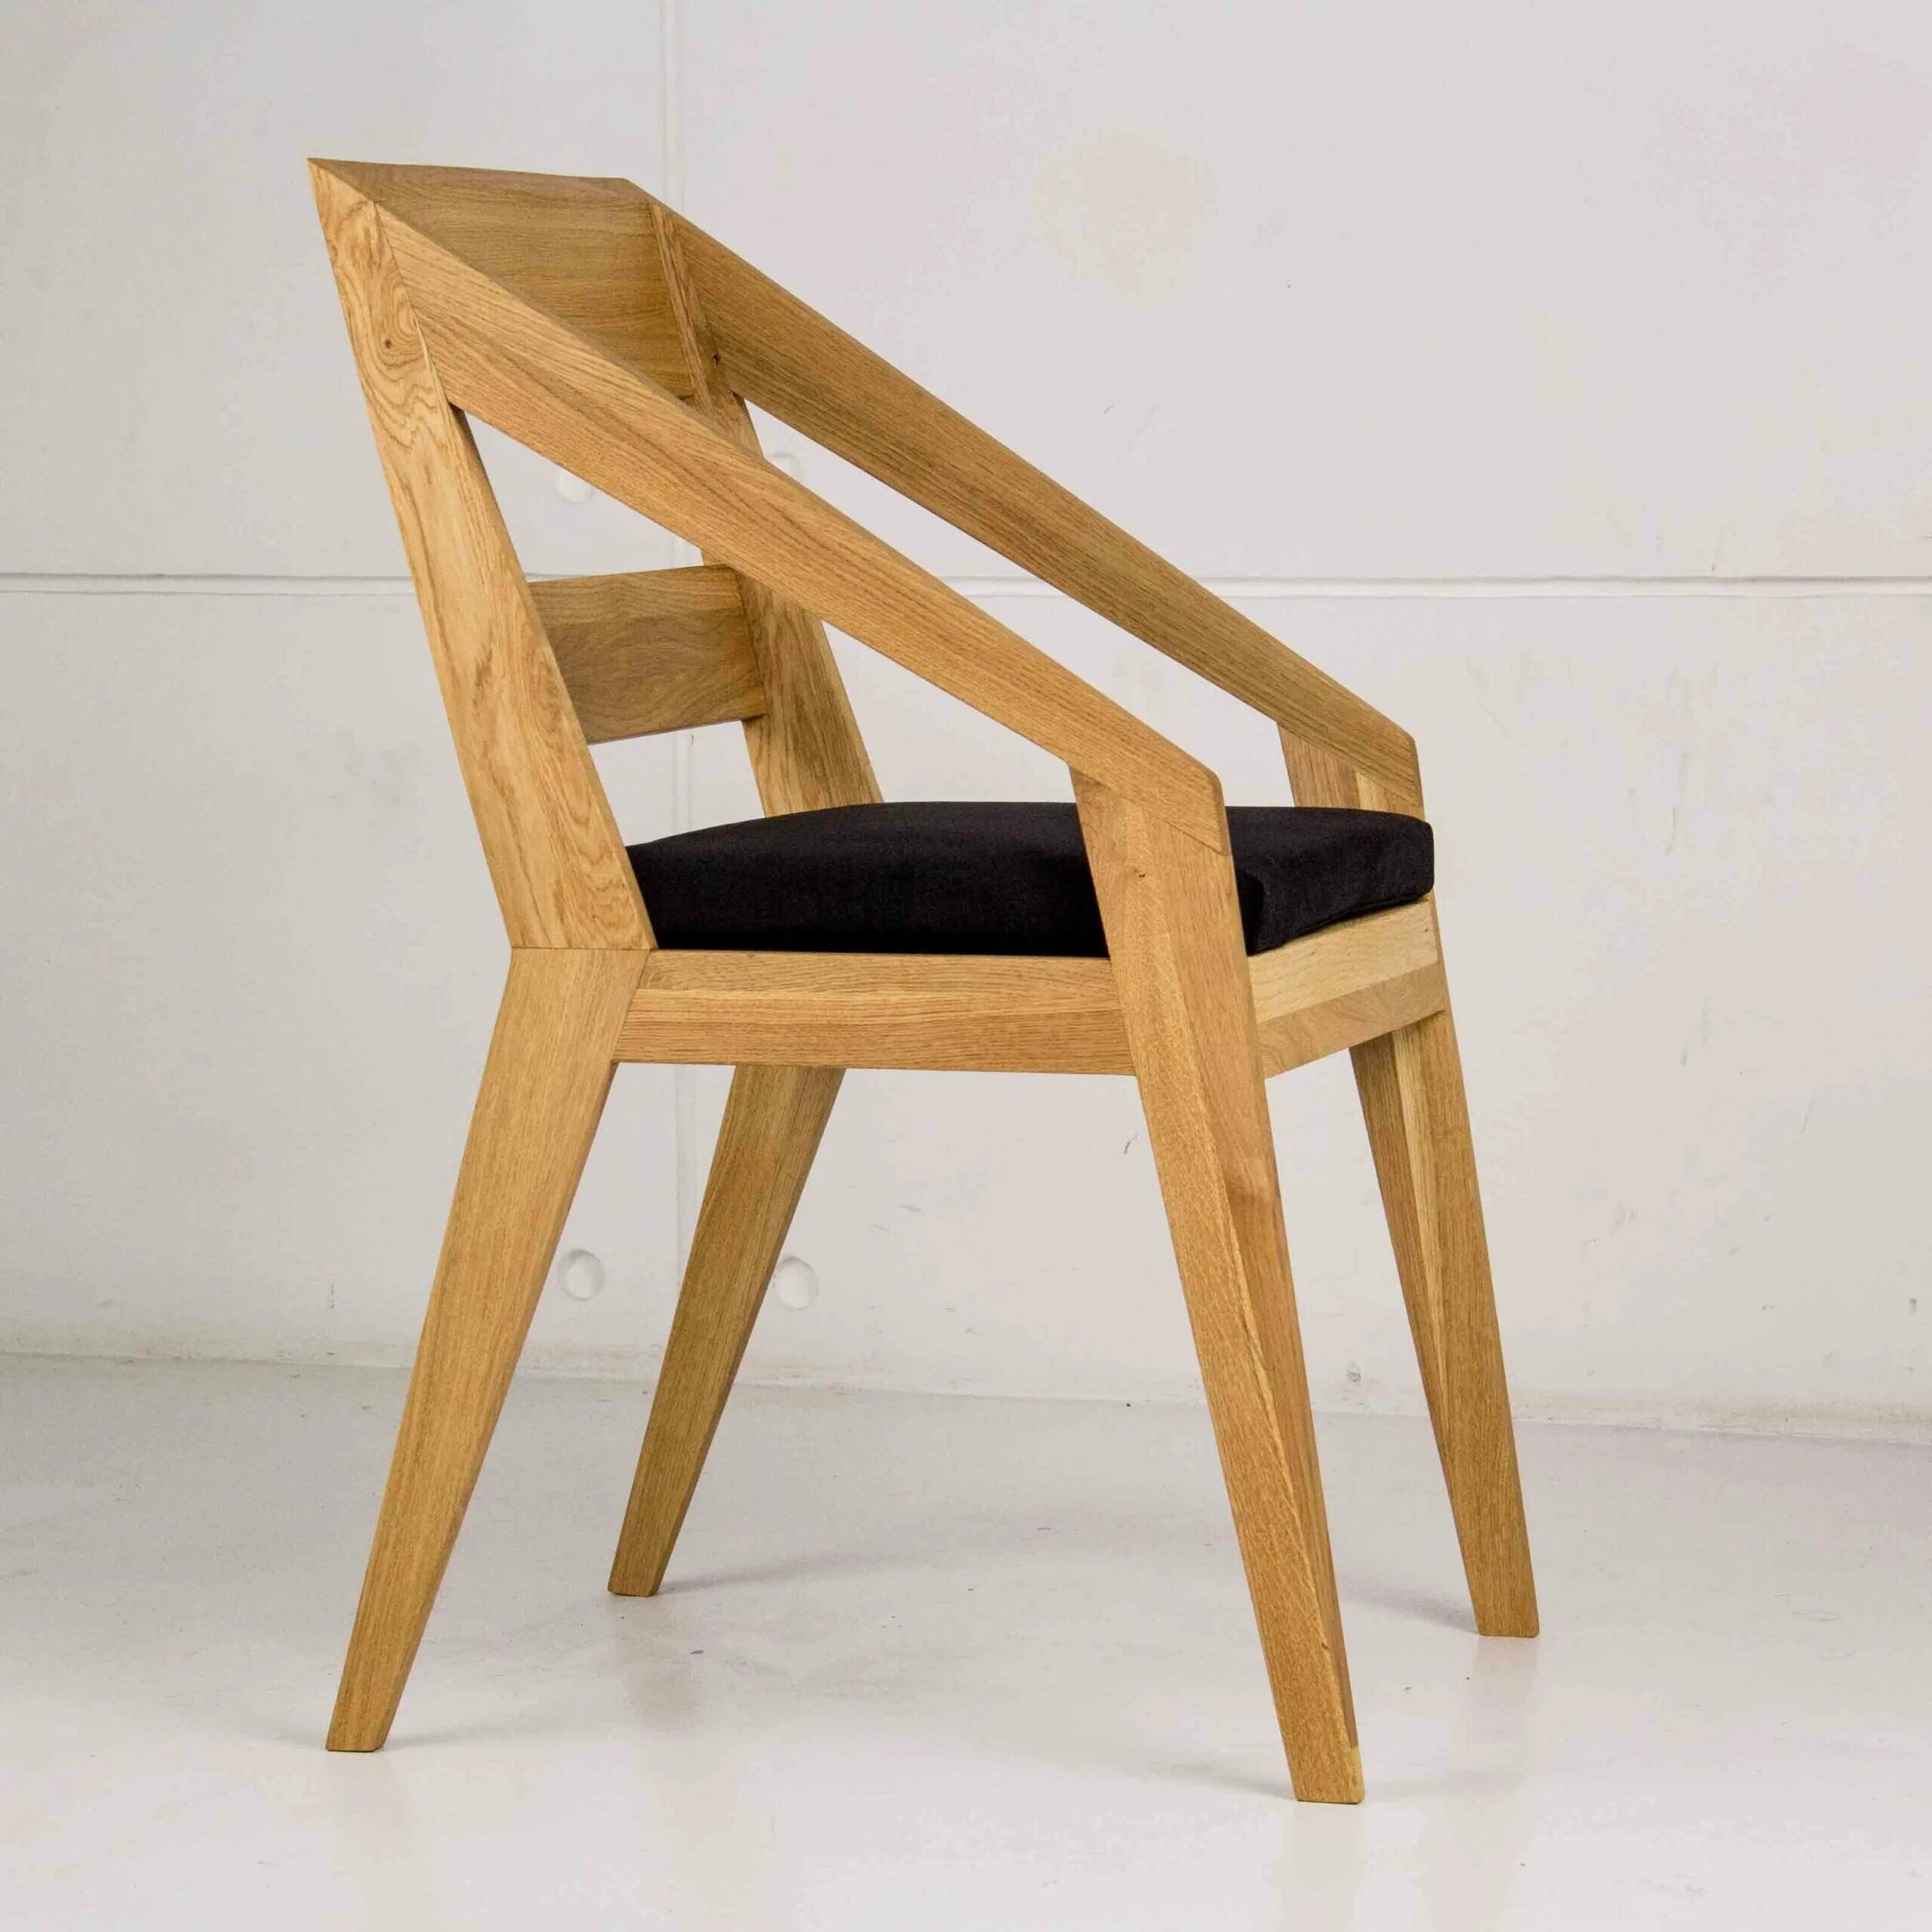 Wooden chair. Стул Сканди дерево. Стул деревянный дизайнерский. Дизайнерские стулья из дерева. Стул дерево дизайнерский.